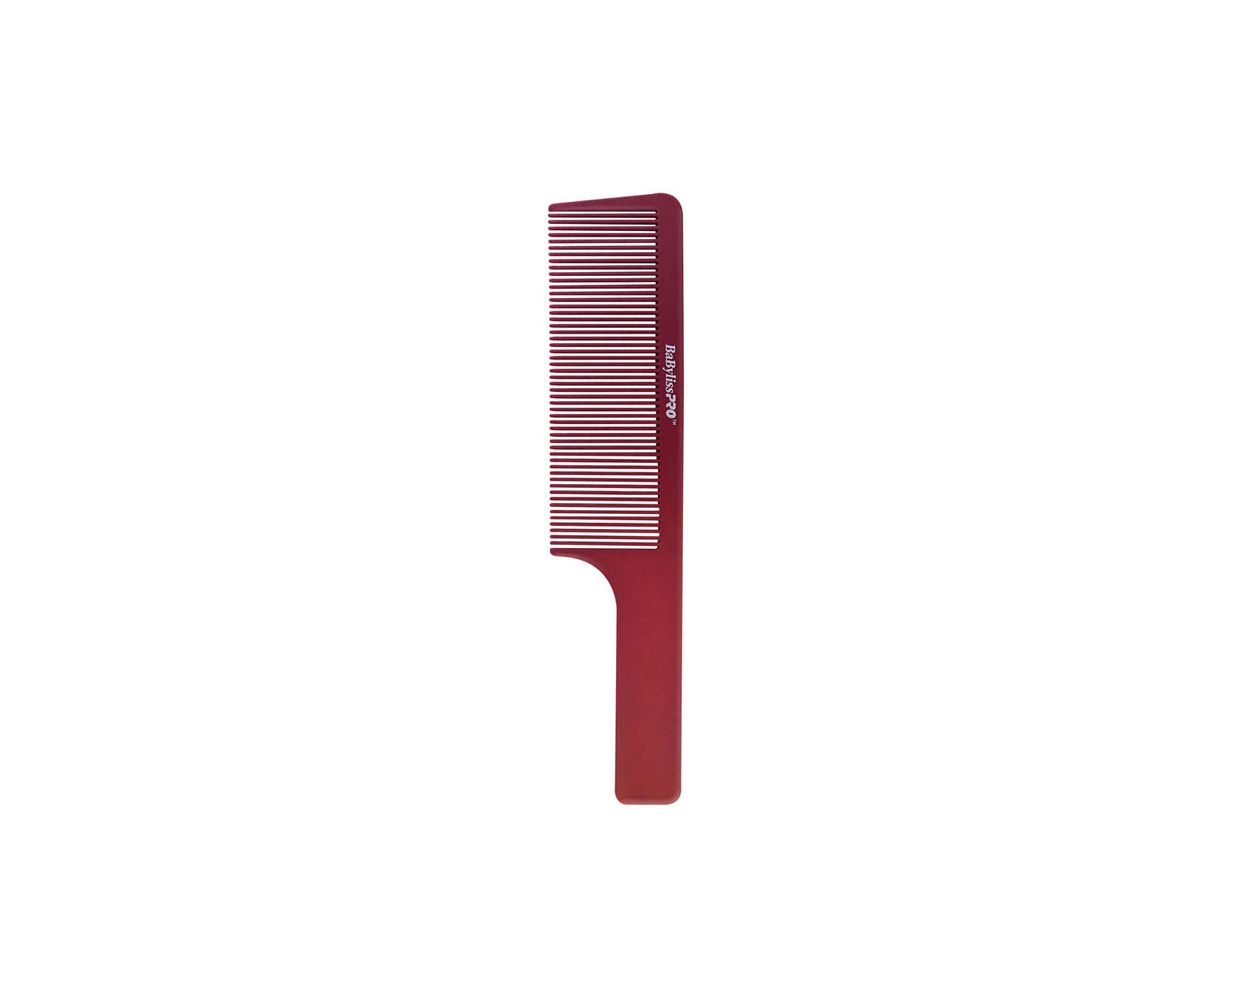 Barberology 9" Clipper Comb Red